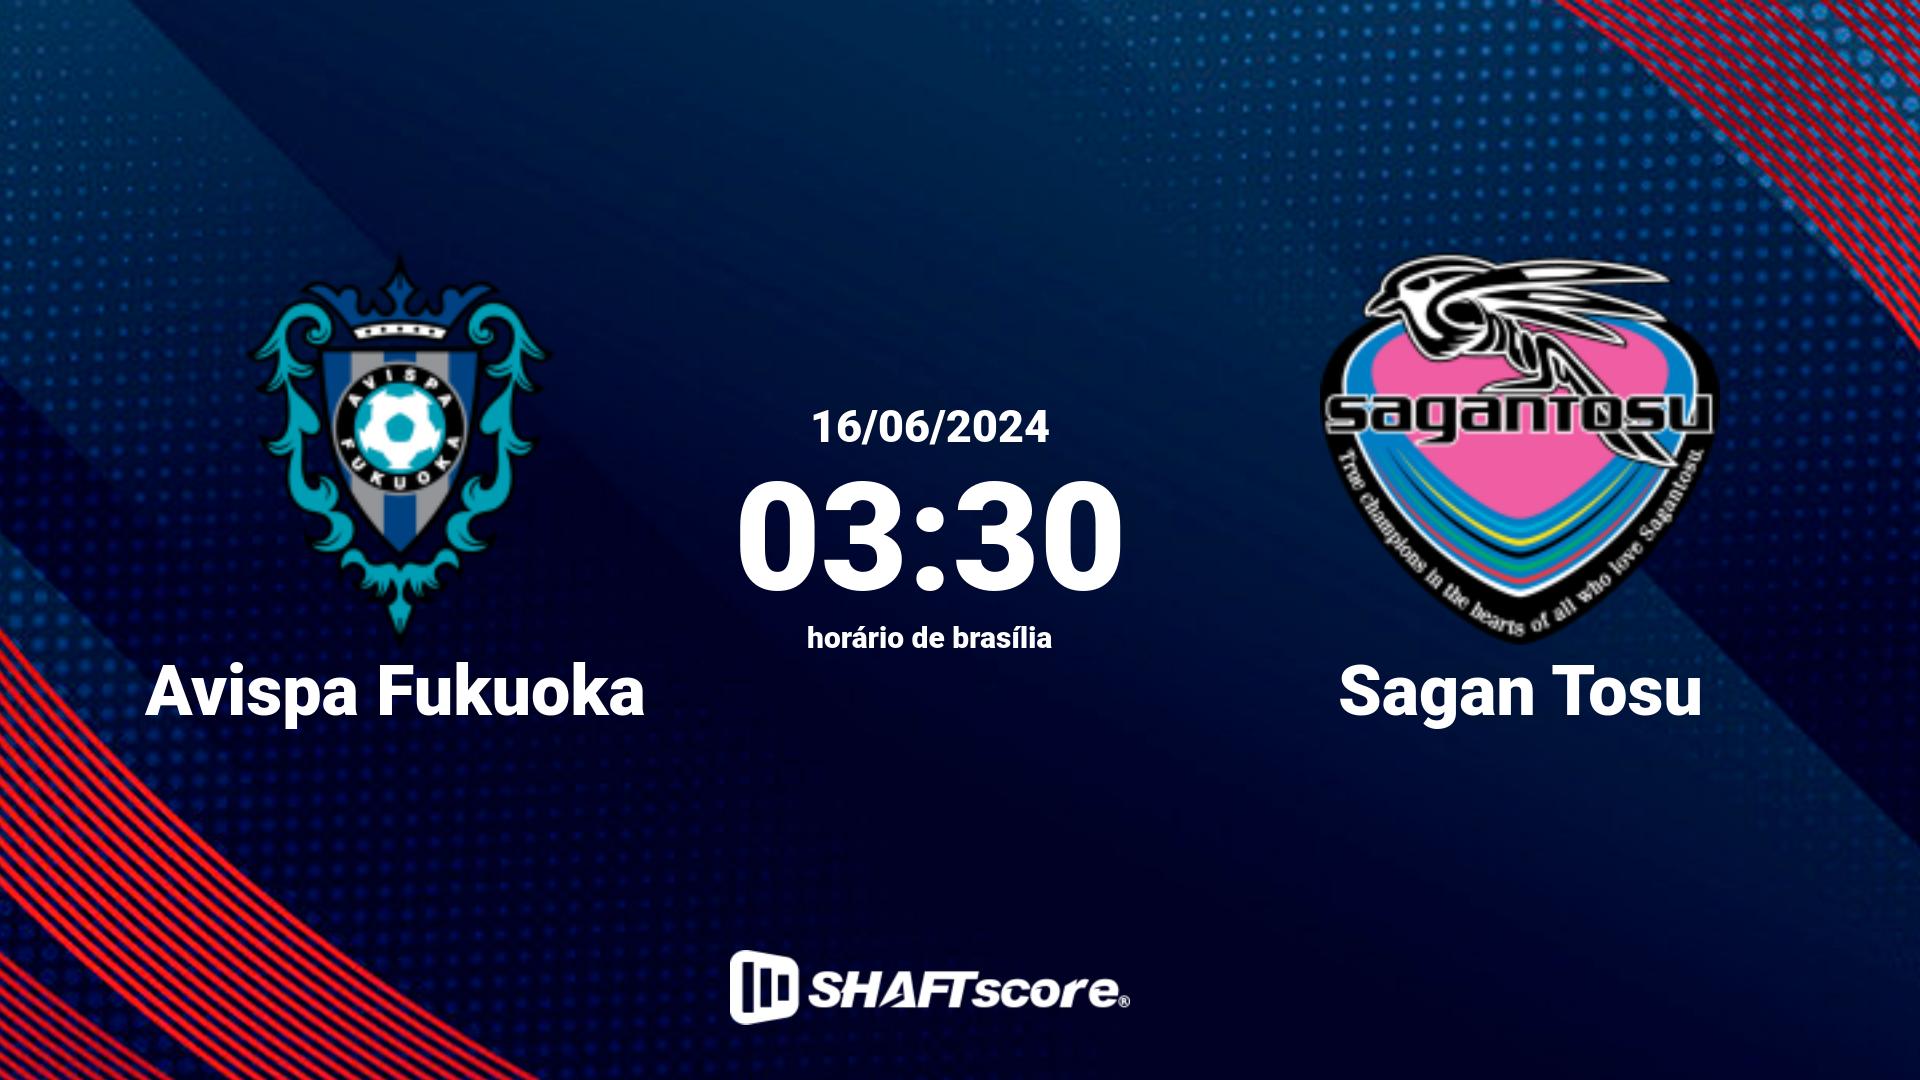 Estatísticas do jogo Avispa Fukuoka vs Sagan Tosu 16.06 03:30